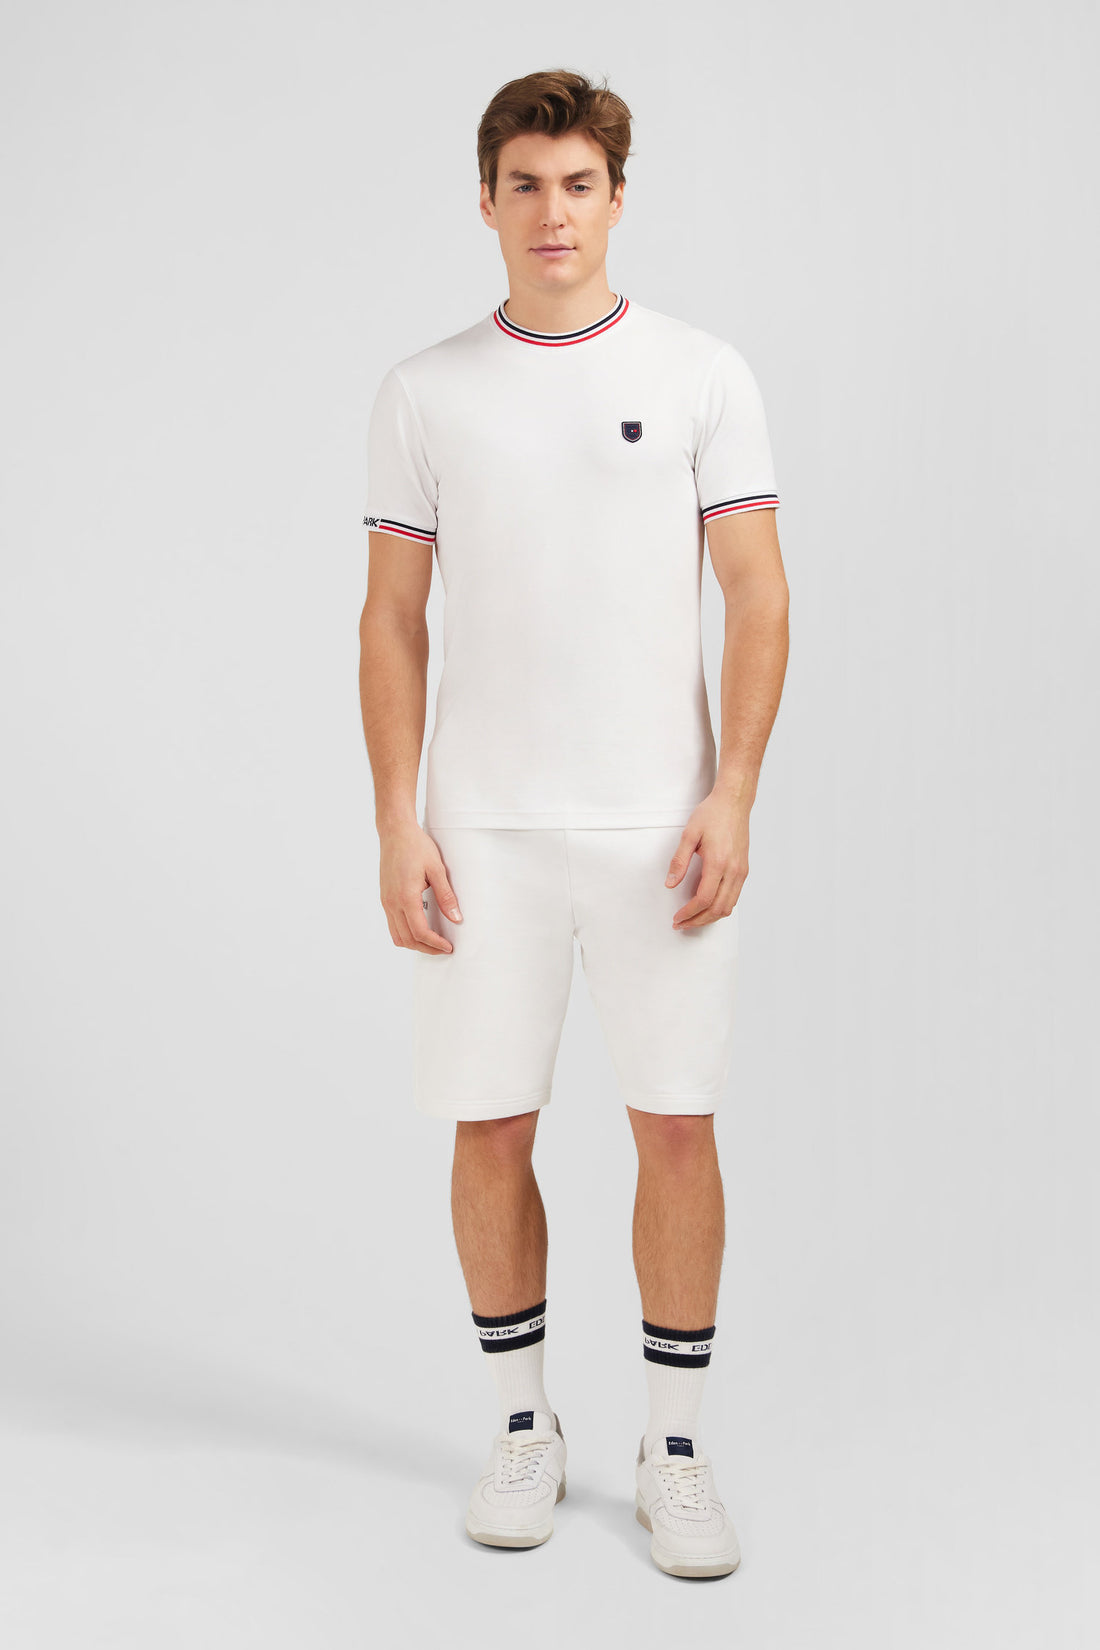 White Short-Sleeved T-Shirt_E24MAITC0024_BC_01